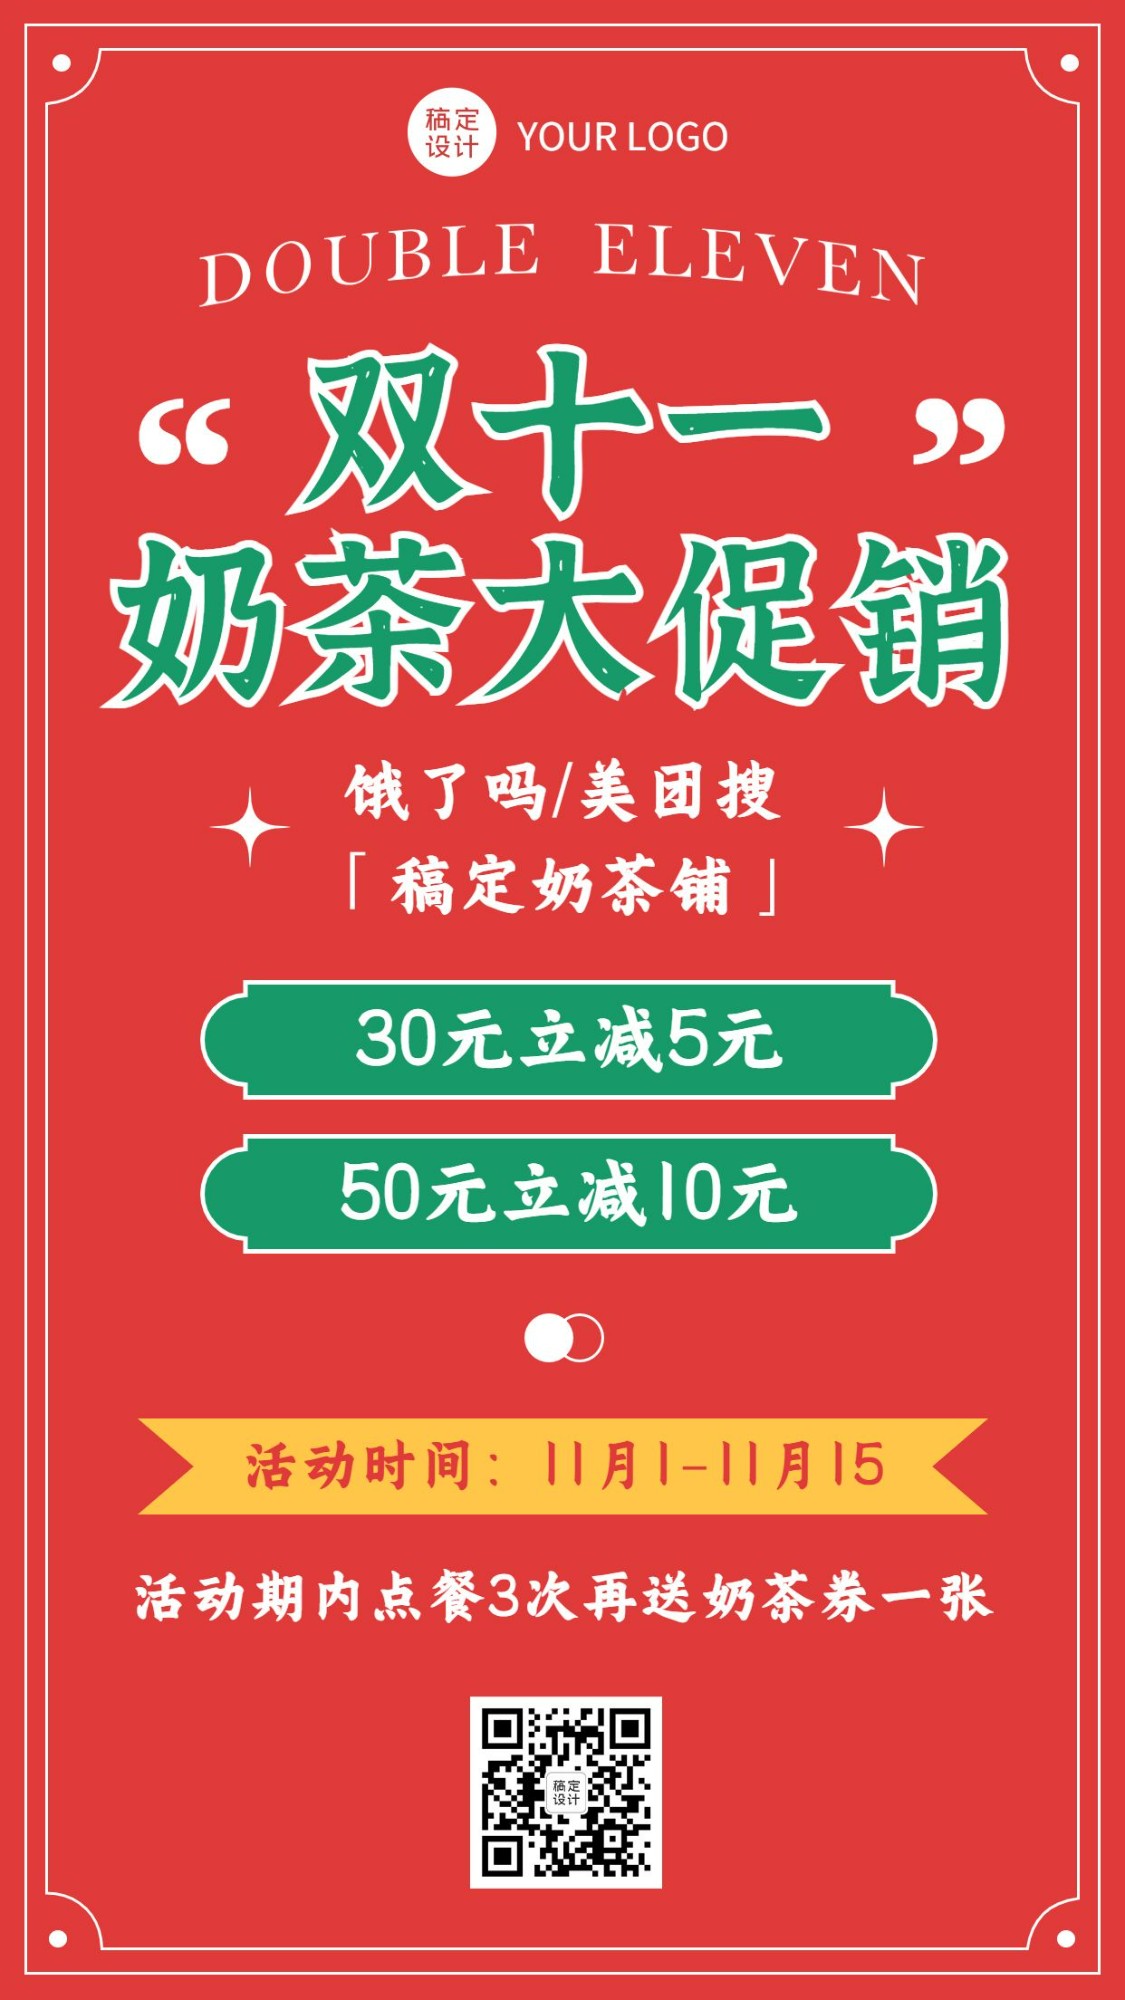 双十一奶茶饮品促销喜庆海报